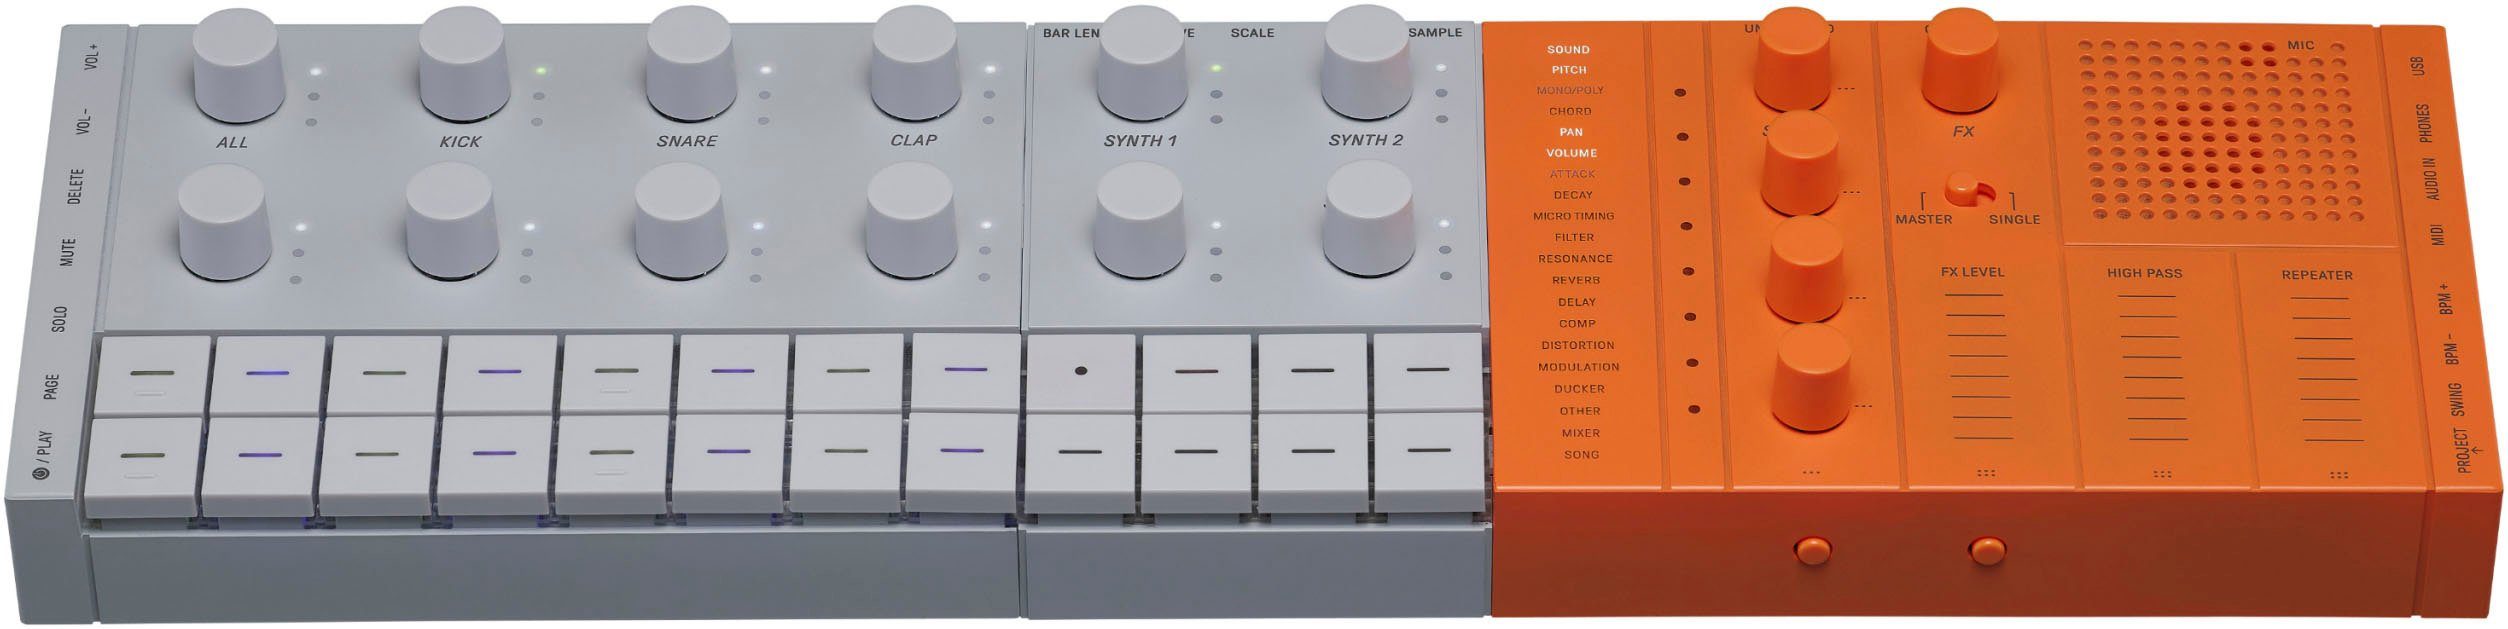 Yamaha Mischpult Musicproduction Studio SEQTRAKOR, orange